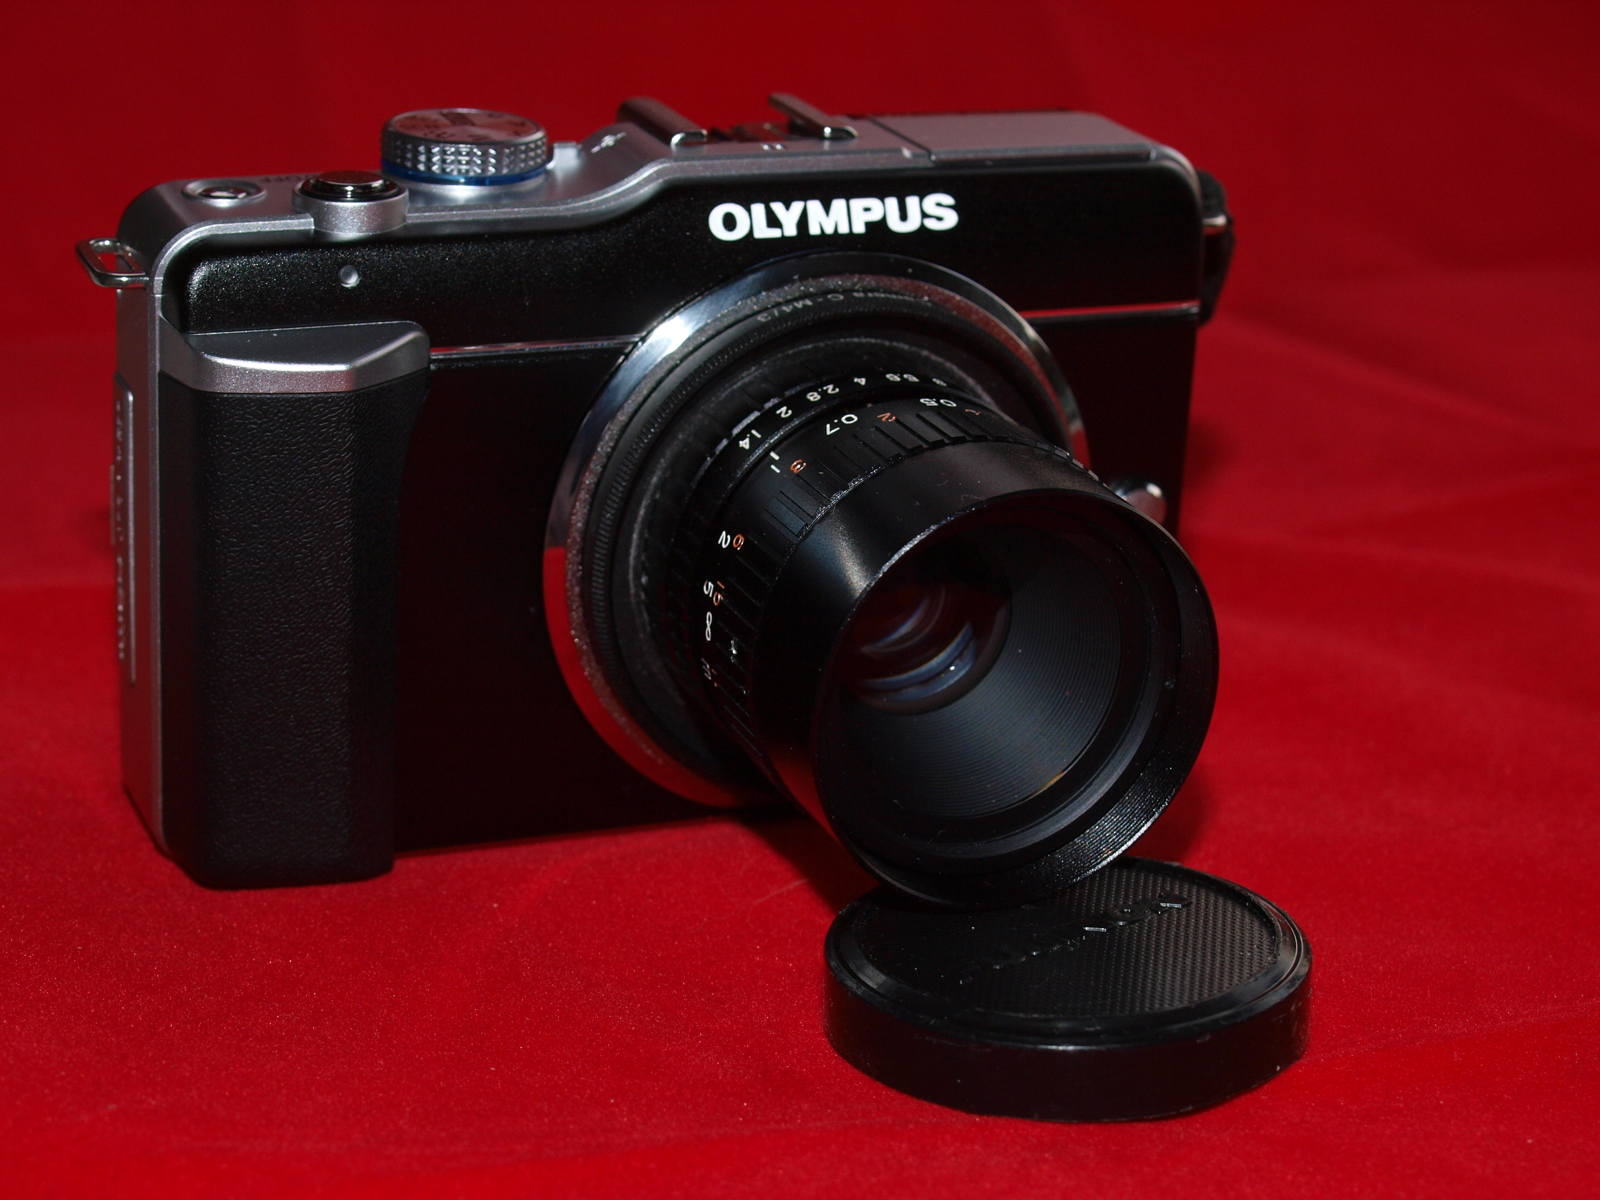 Fujinon-TV 25mm F1.4 lens on Olympus EPL-1